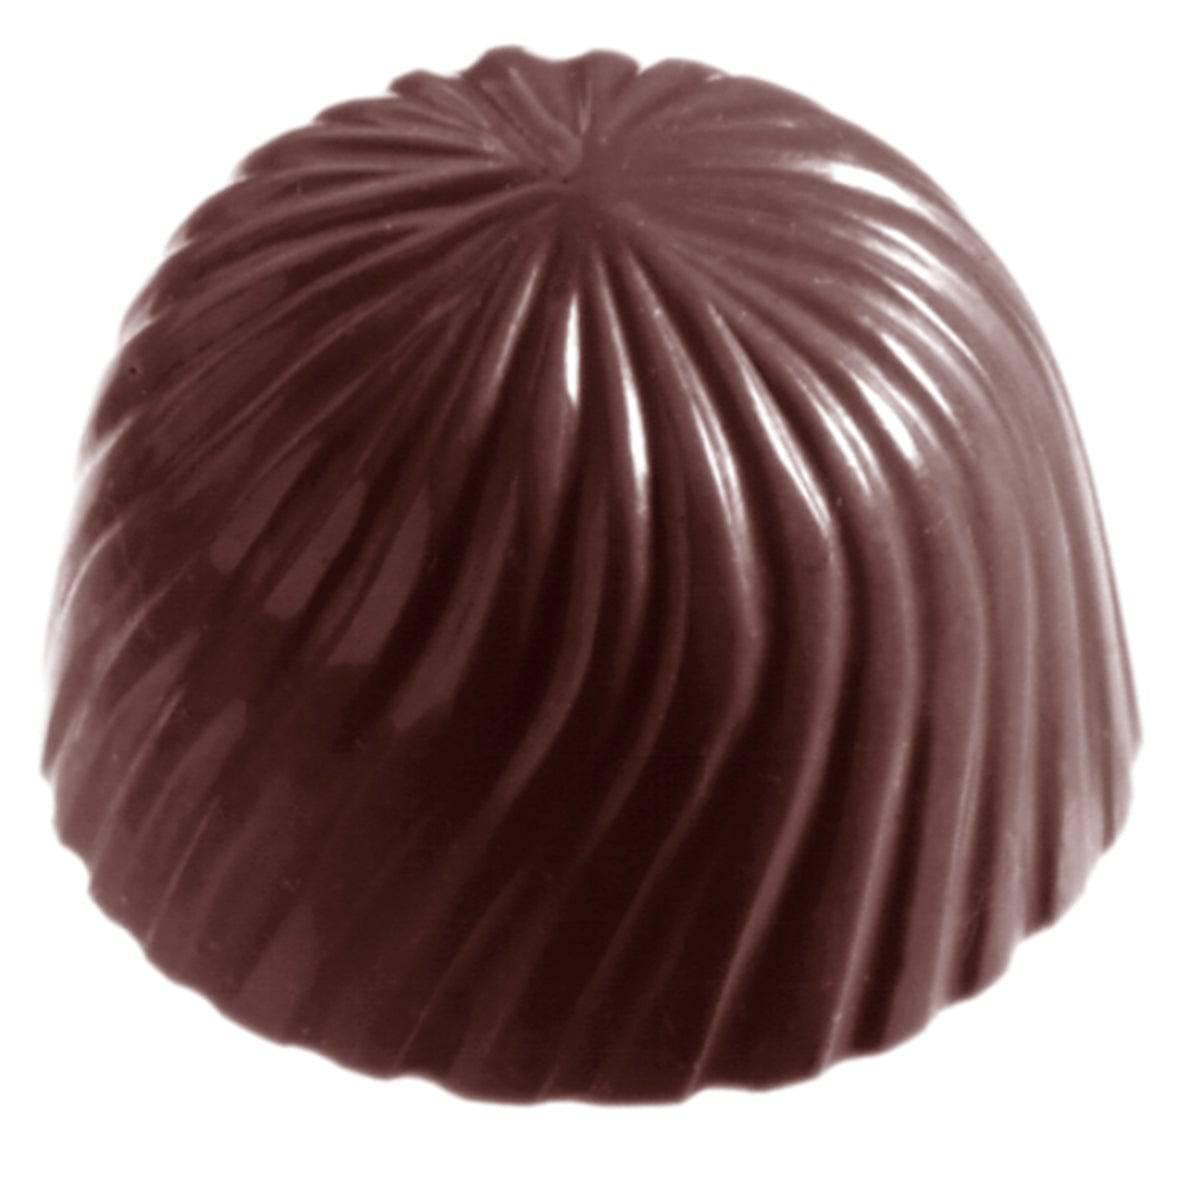 CW2230 - CHOCOLATE MOULD CAP - Zucchero Canada